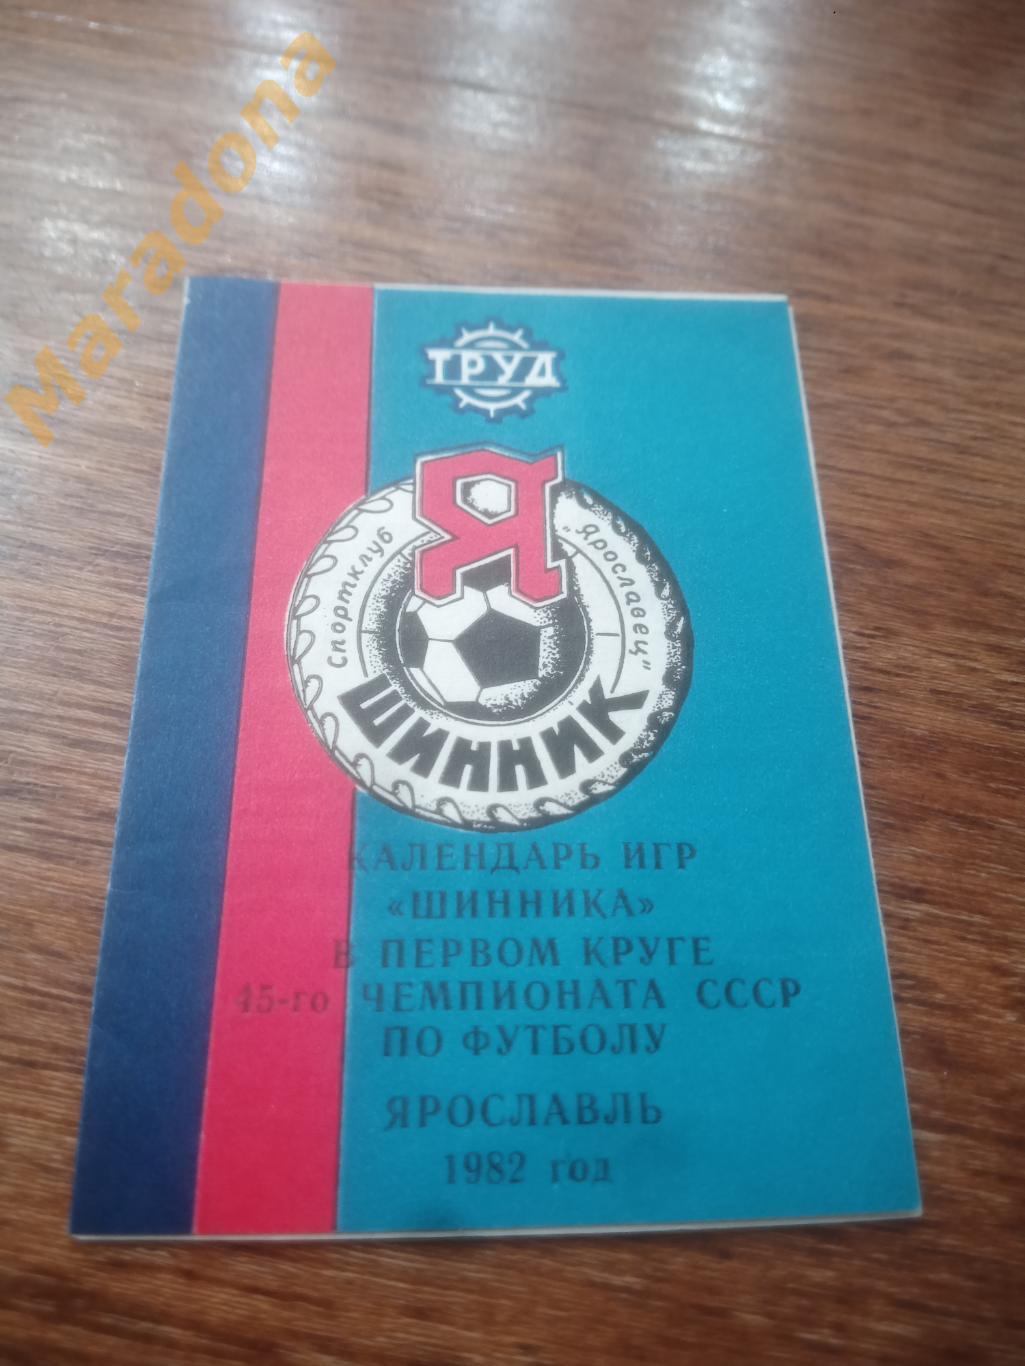 Шинник Ярославль 1982 календарь игр на 2 круг